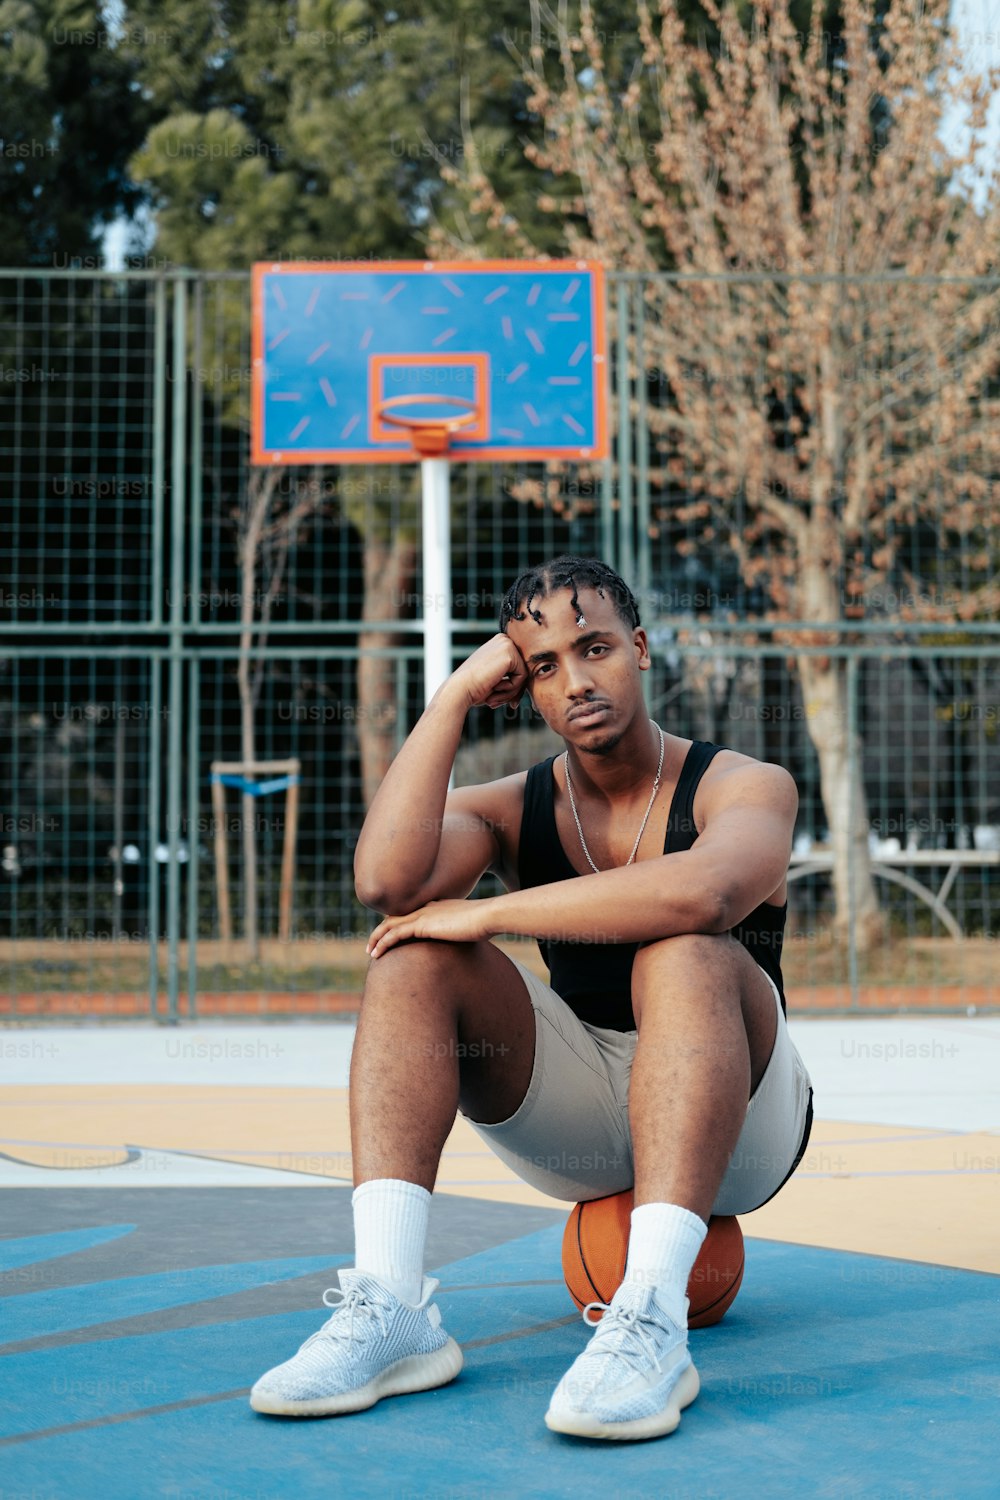 Un uomo seduto su un campo da basket con in mano un pallone da basket